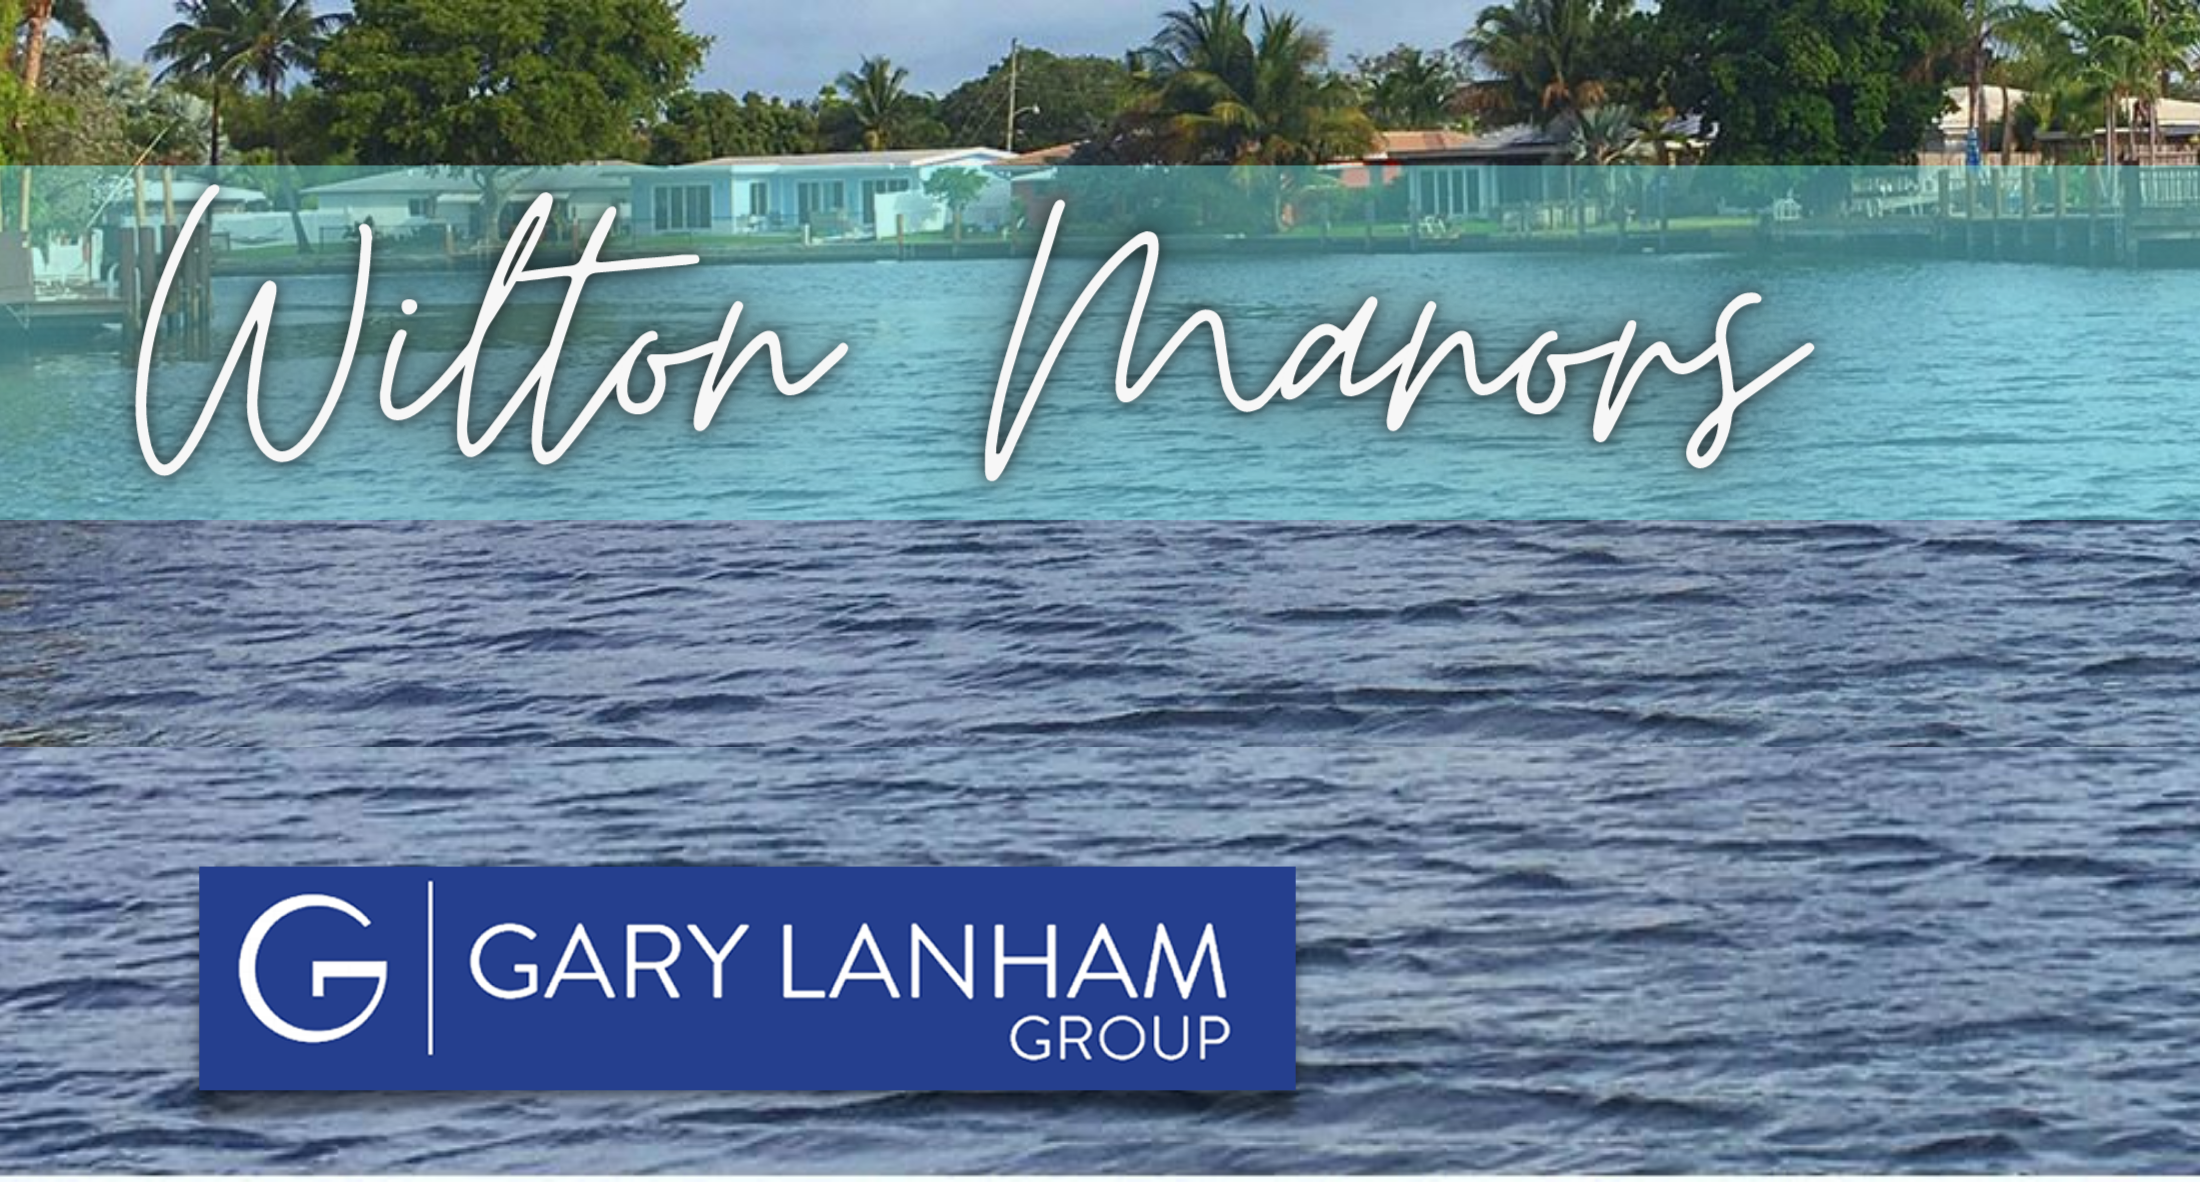 Wilton Manors Gary Lanham Group